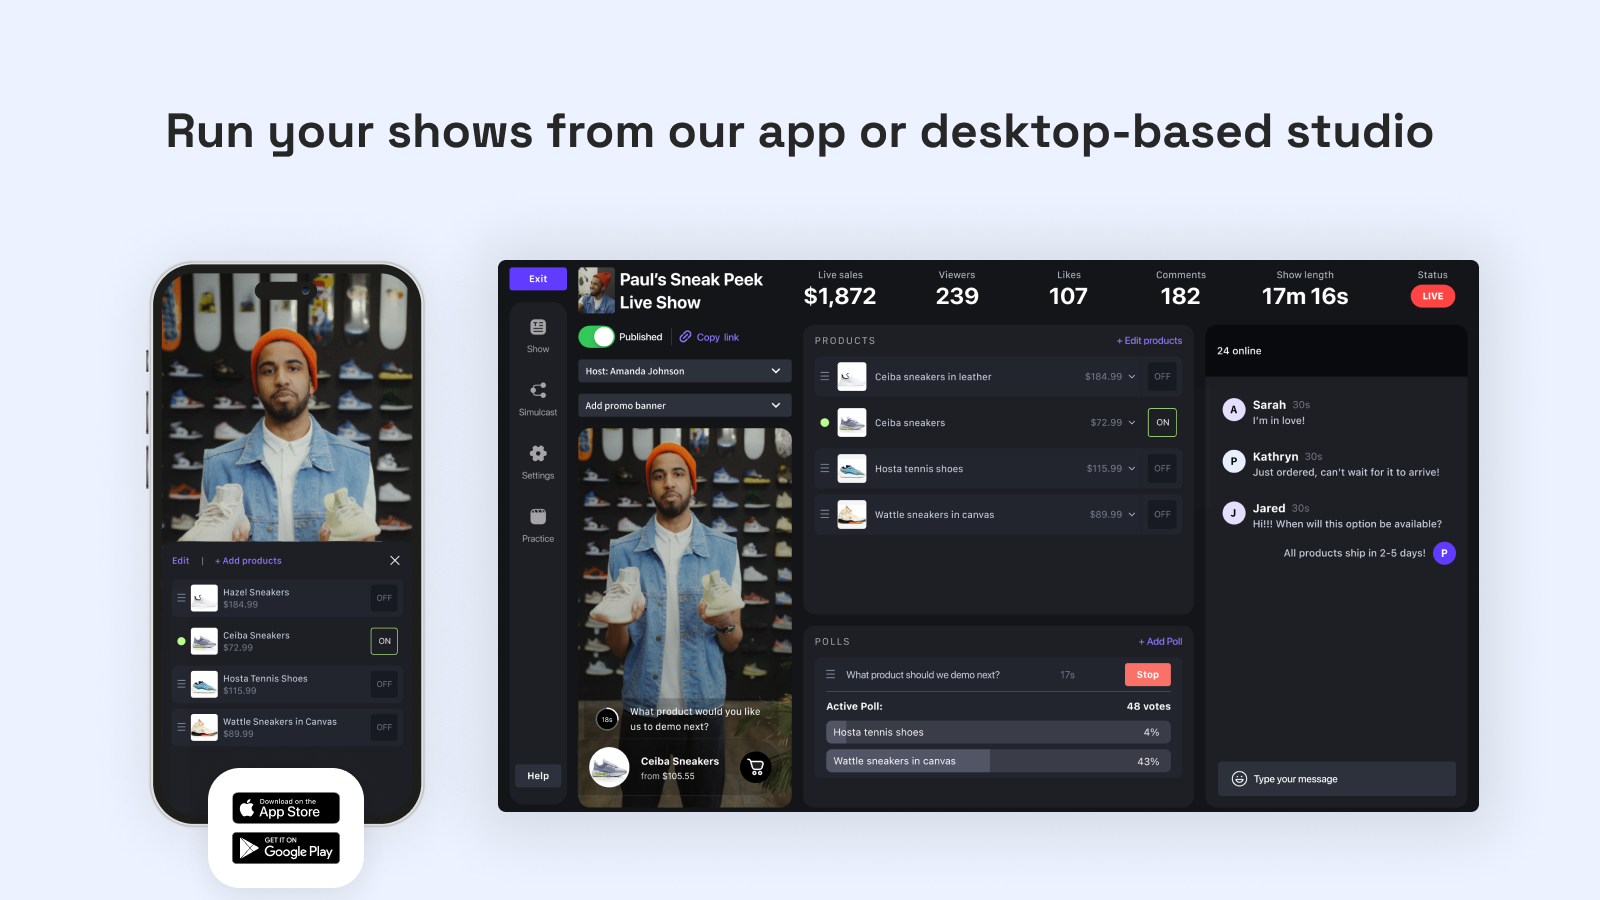 Showday: Voer uw shows uit vanuit onze app of desktop-gebaseerde studio